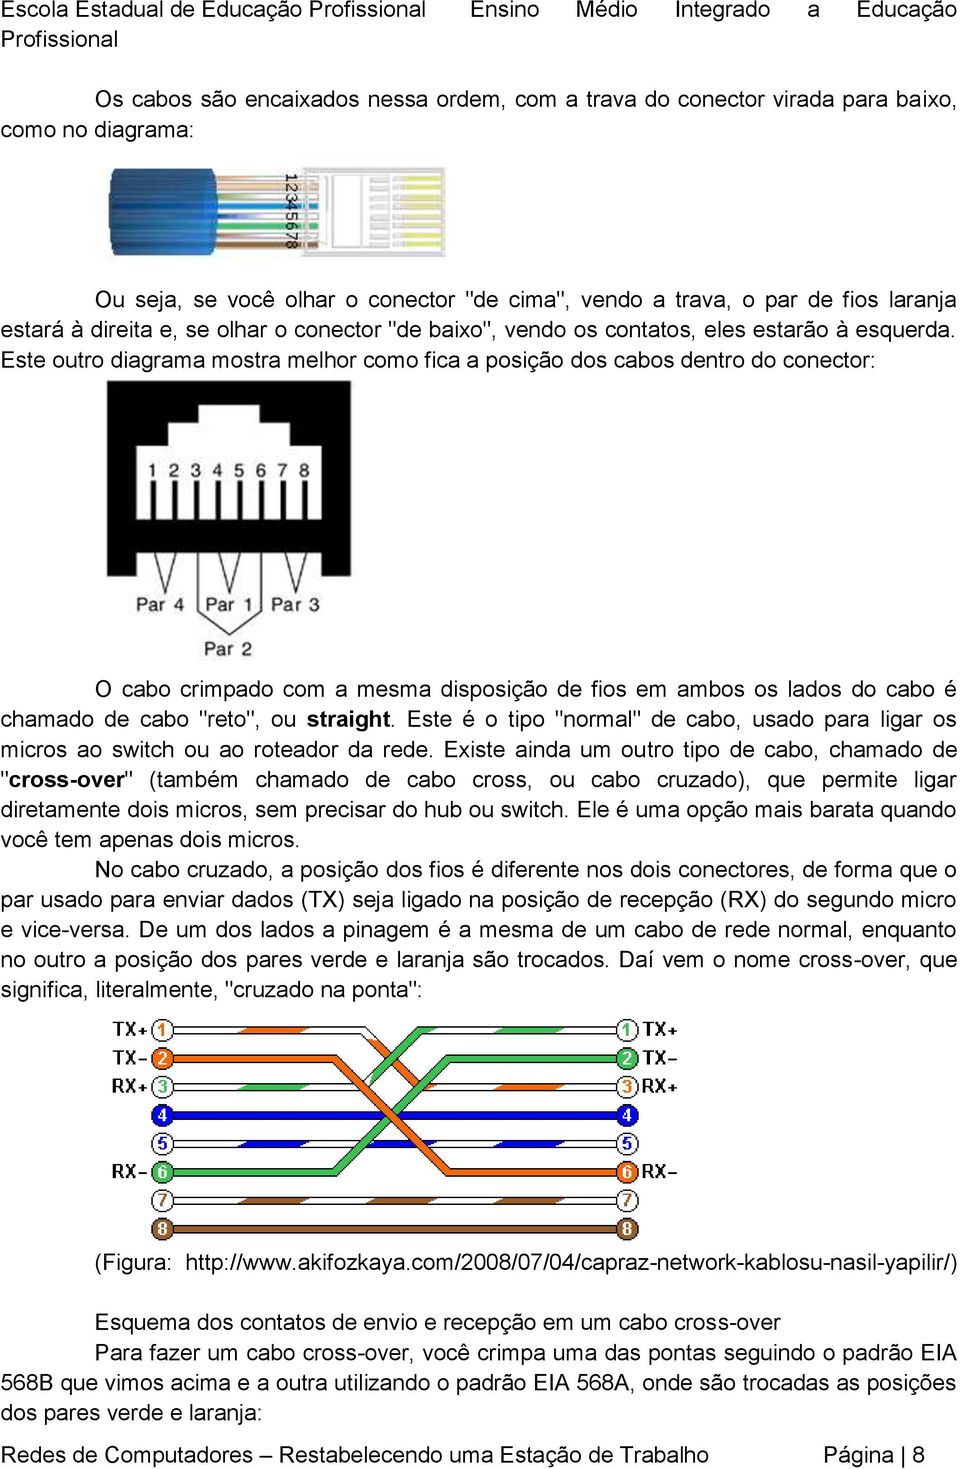 Este outro diagrama mostra melhor como fica a posição dos cabos dentro do conector: O cabo crimpado com a mesma disposição de fios em ambos os lados do cabo é chamado de cabo "reto", ou straight.